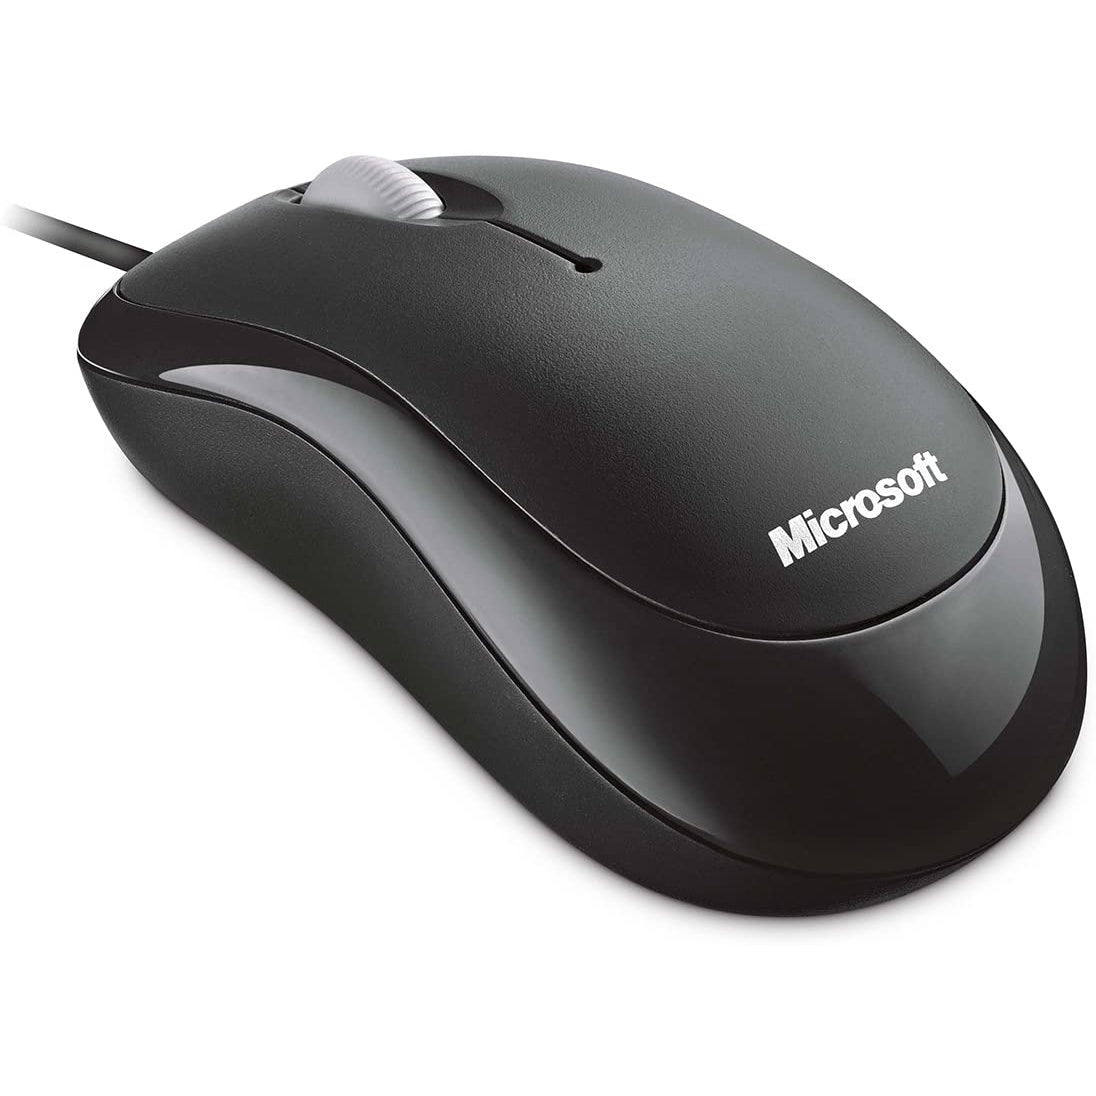 Microsoft Basic Optical Mouse - Black